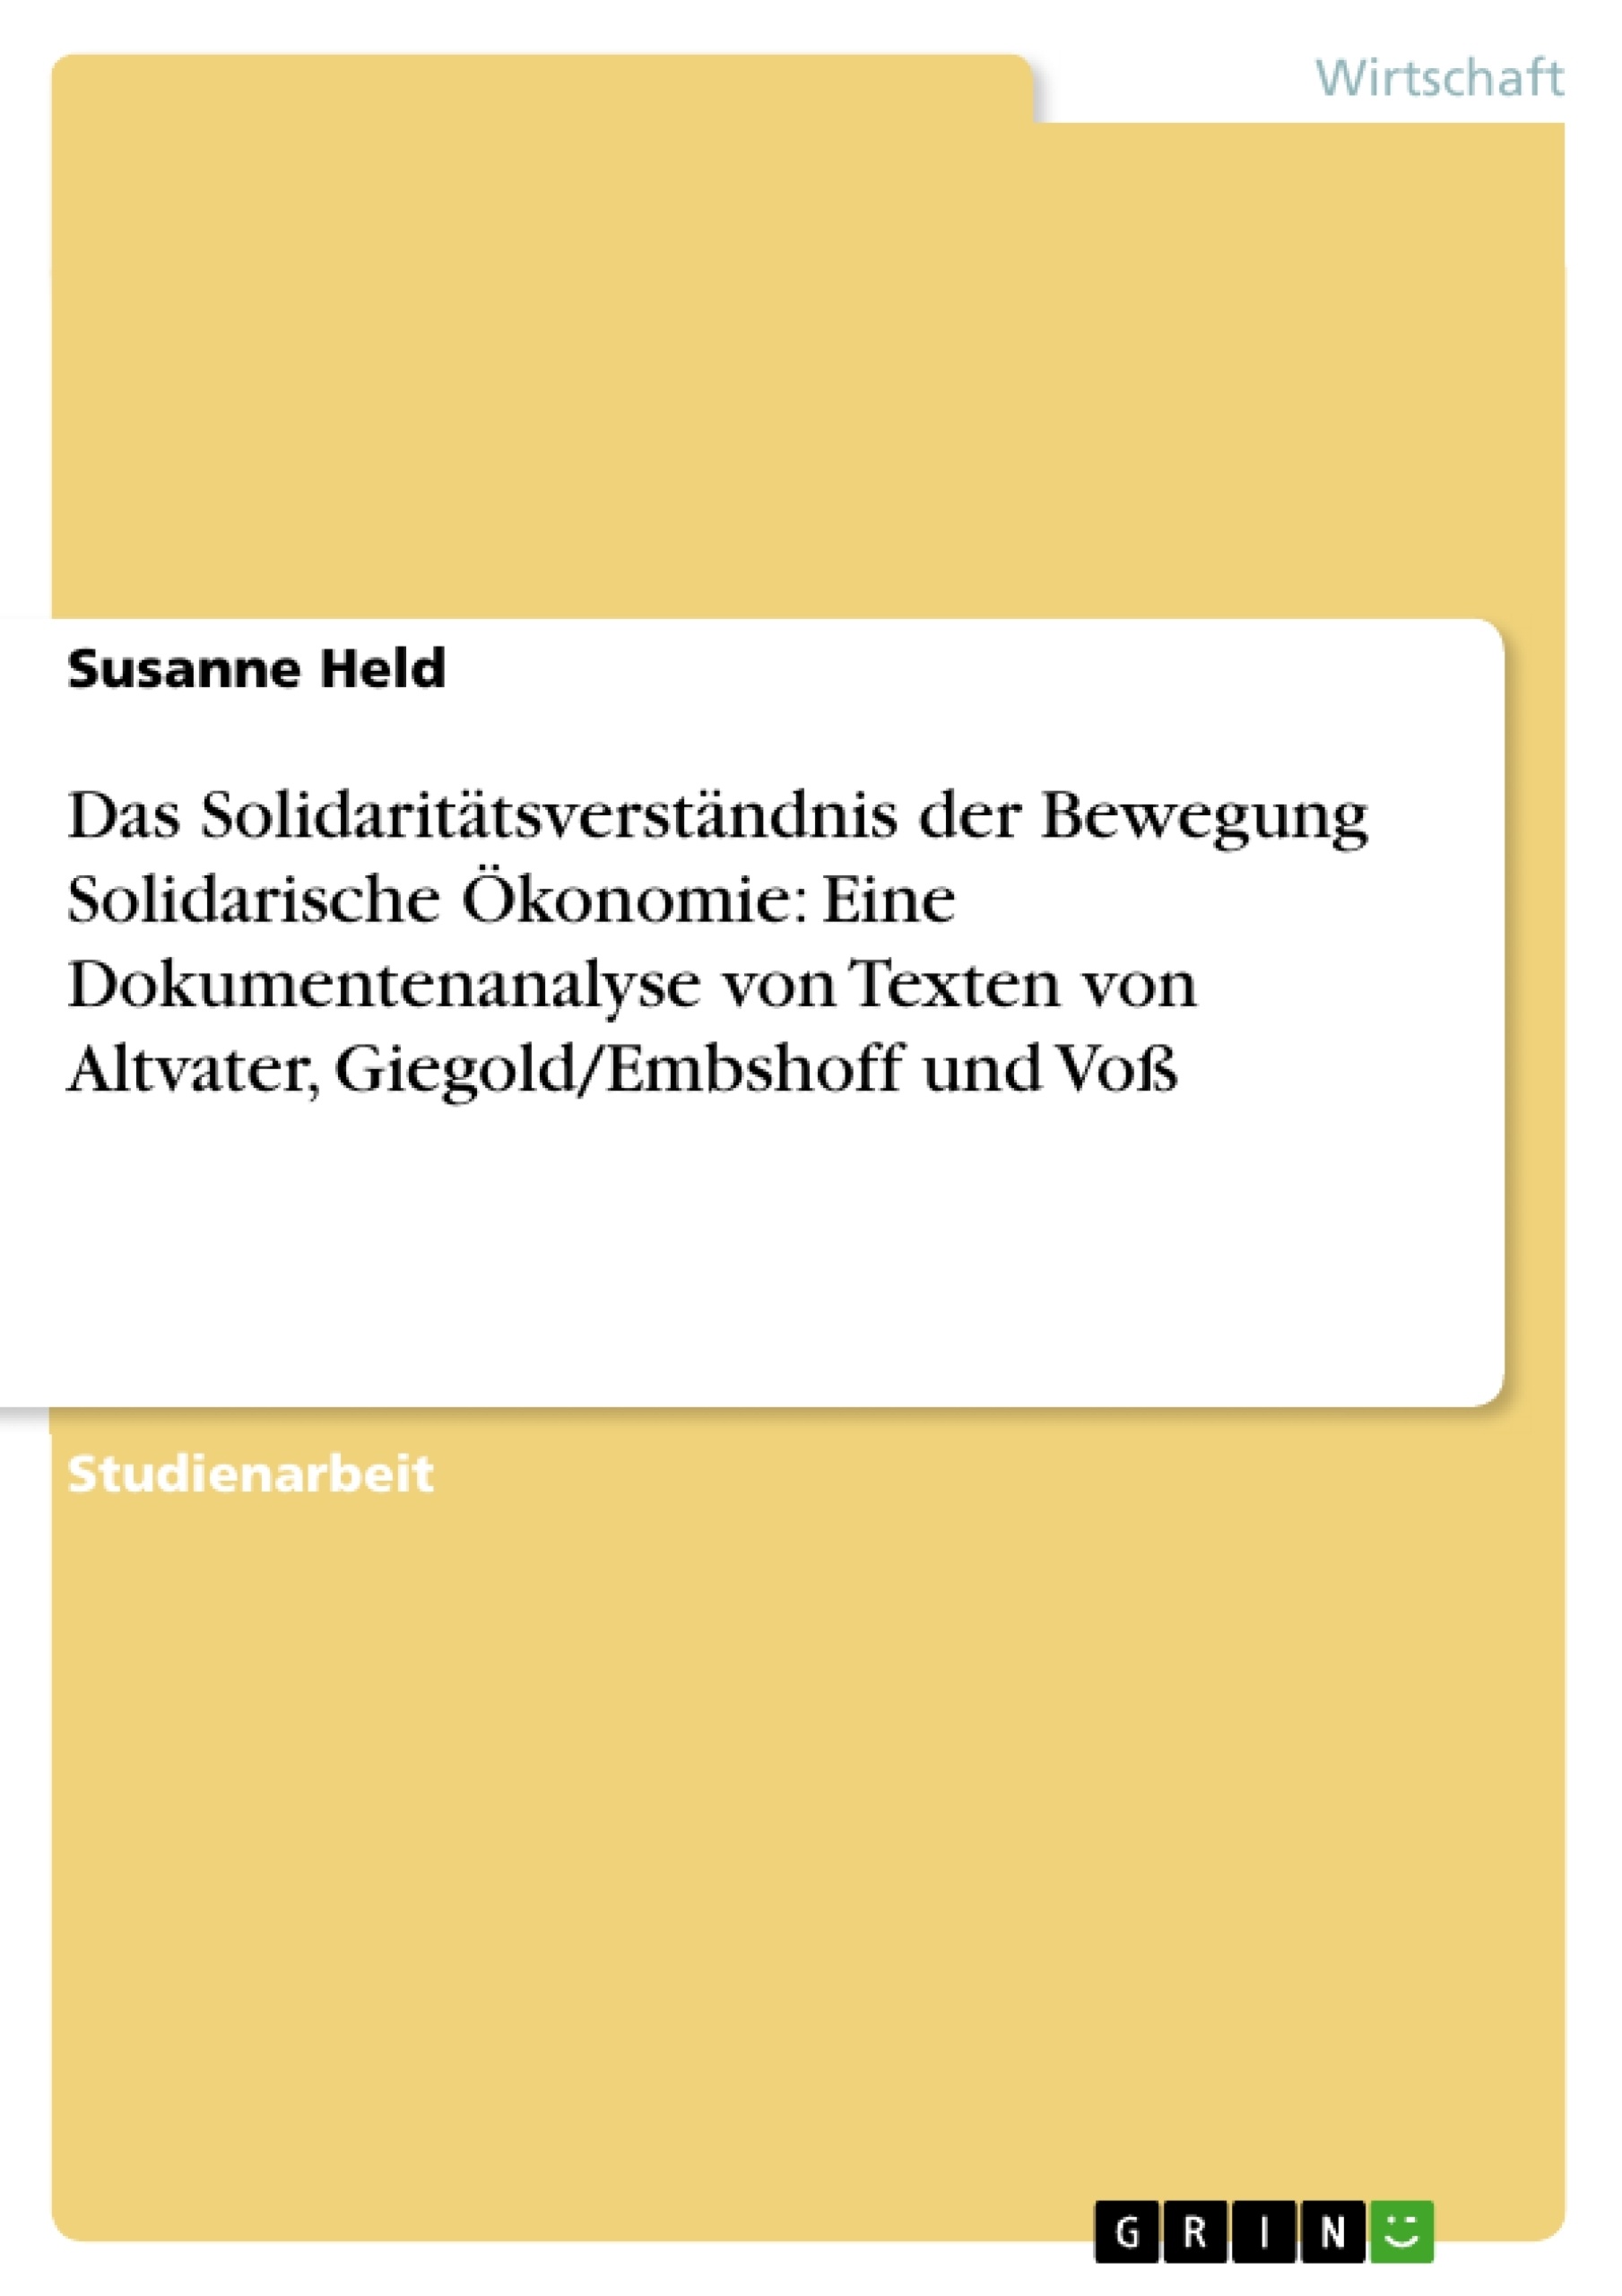 Titel: Das Solidaritätsverständnis der Bewegung Solidarische Ökonomie: Eine Dokumentenanalyse von Texten von Altvater, Giegold/Embshoff und Voß  